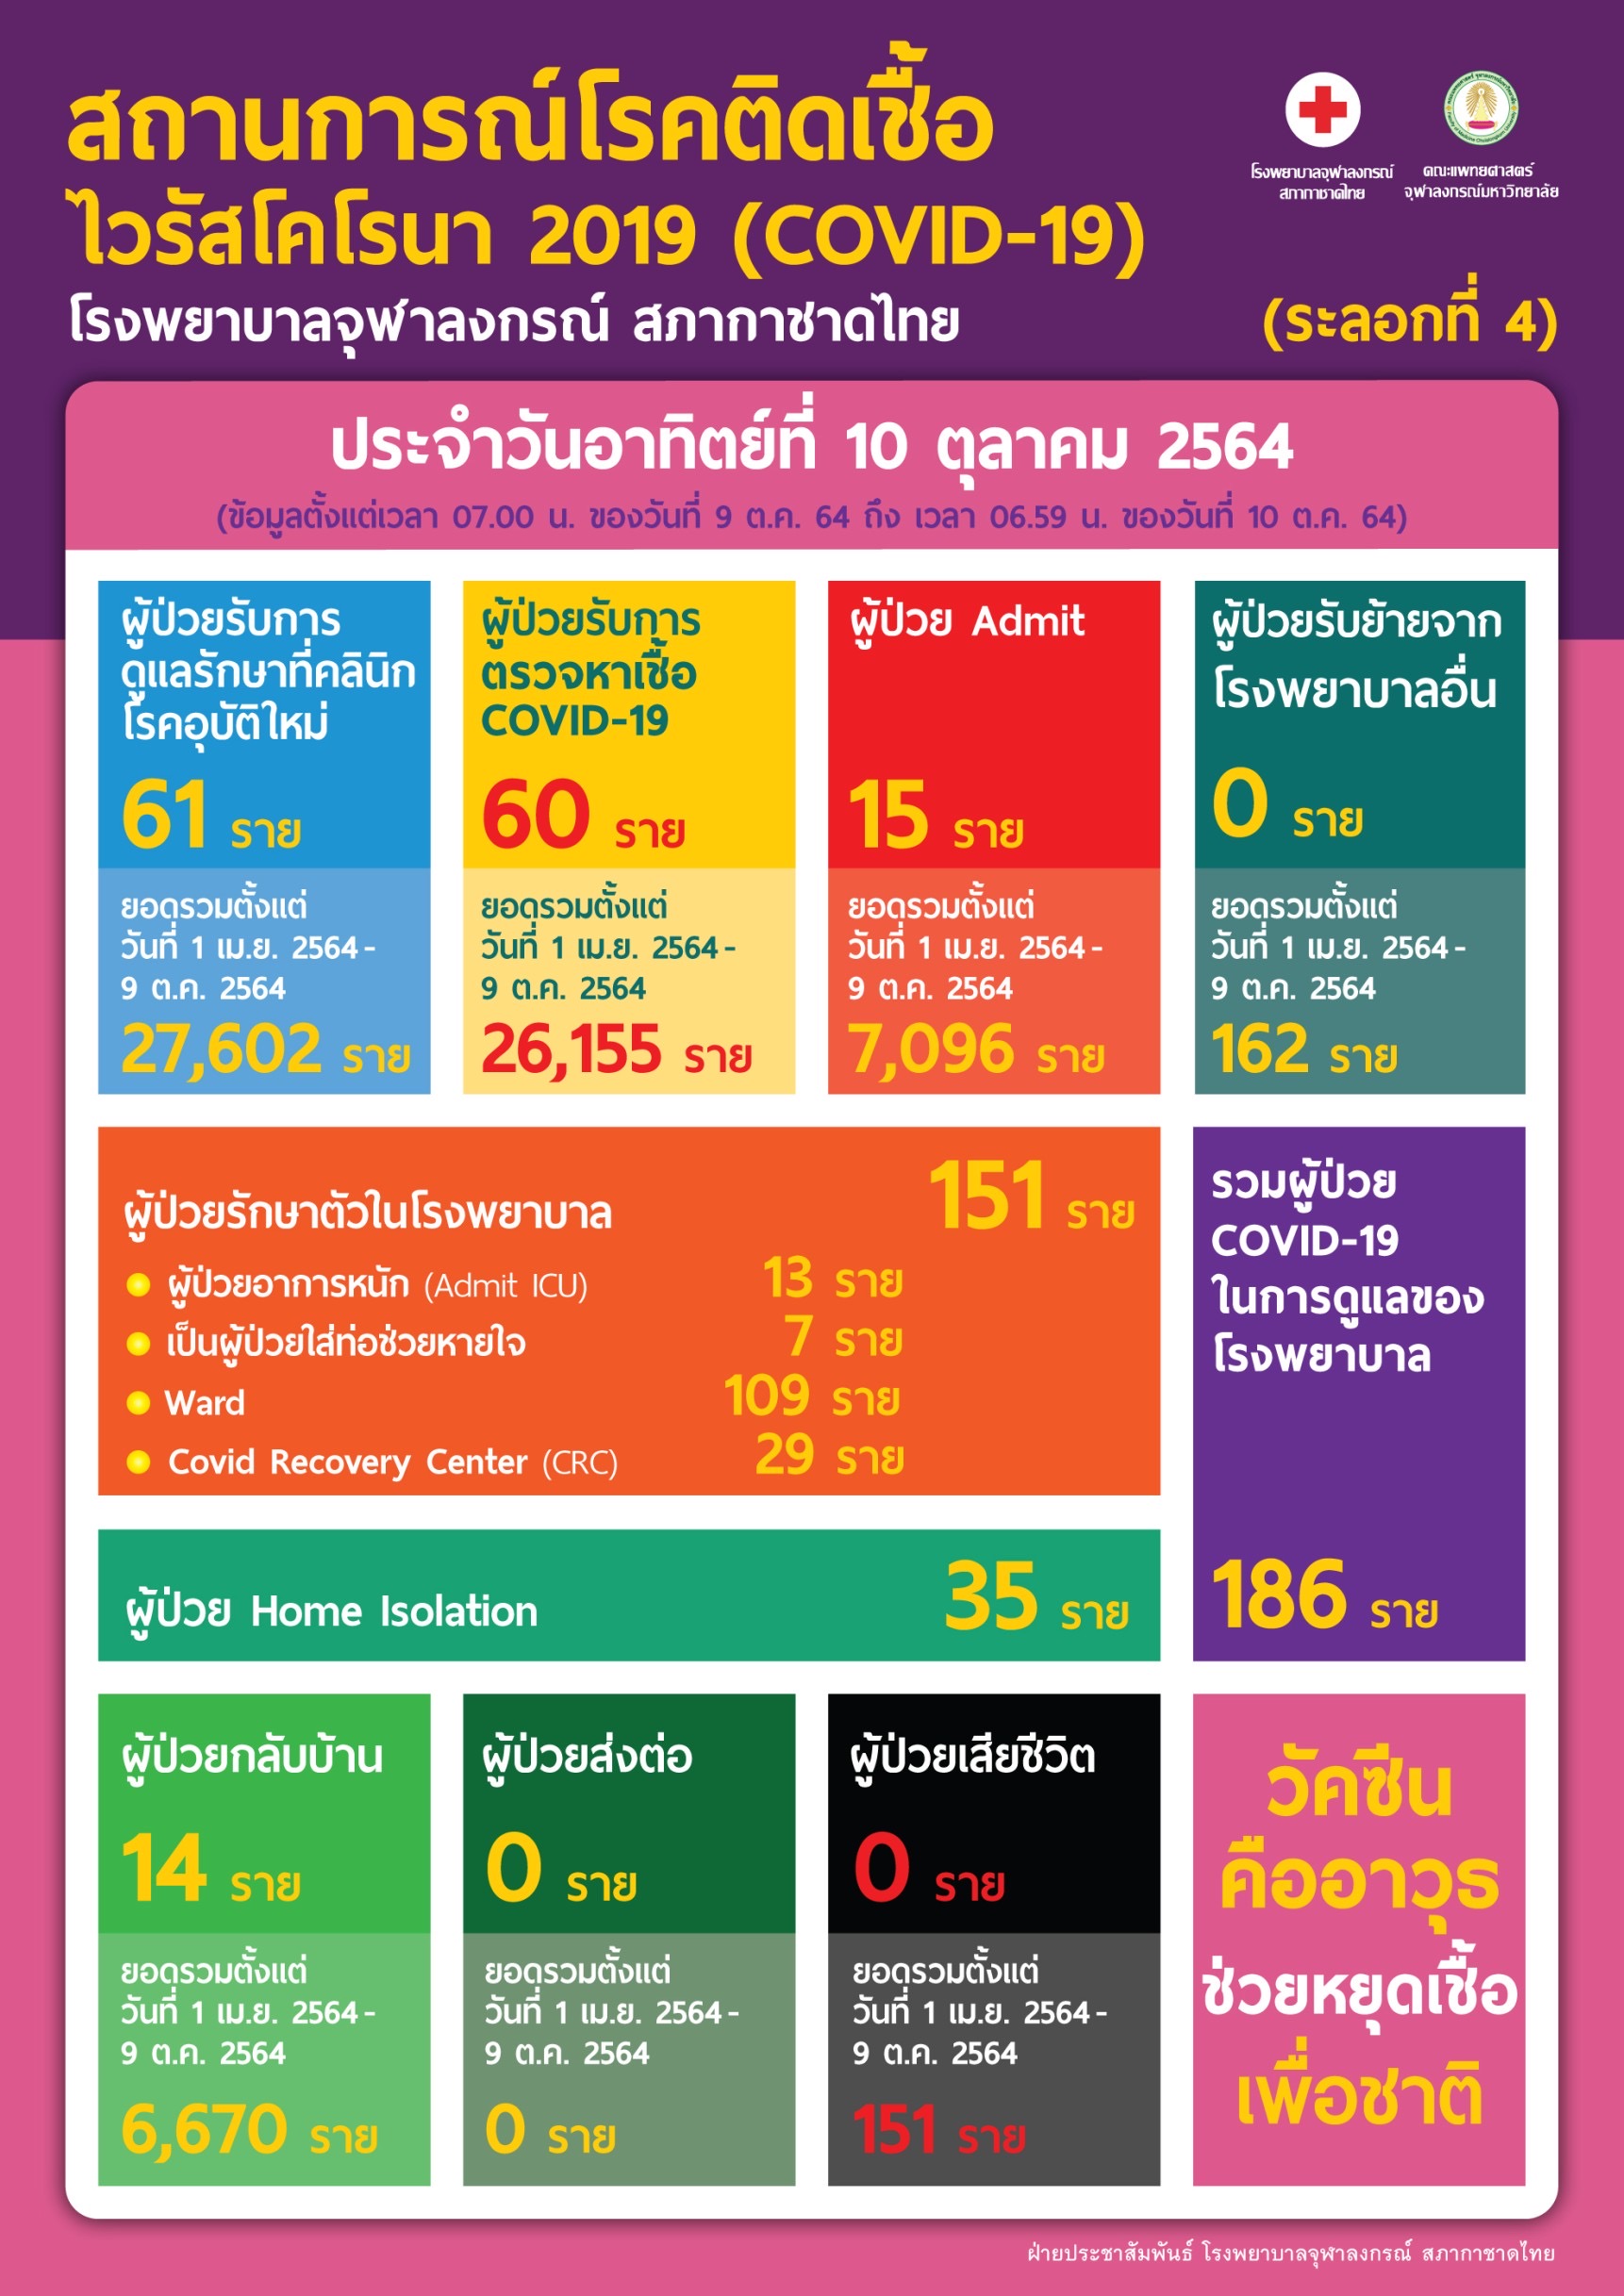 สถานการณ์โรคติดเชื้อไวรัสโคโรนา 2019 (COVID-19) (ระลอกที่ 4) โรงพยาบาลจุฬาลงกรณ์ สภากาชาดไทย ประจำวันอาทิตย์ที่ 10 ตุลาคม 2564